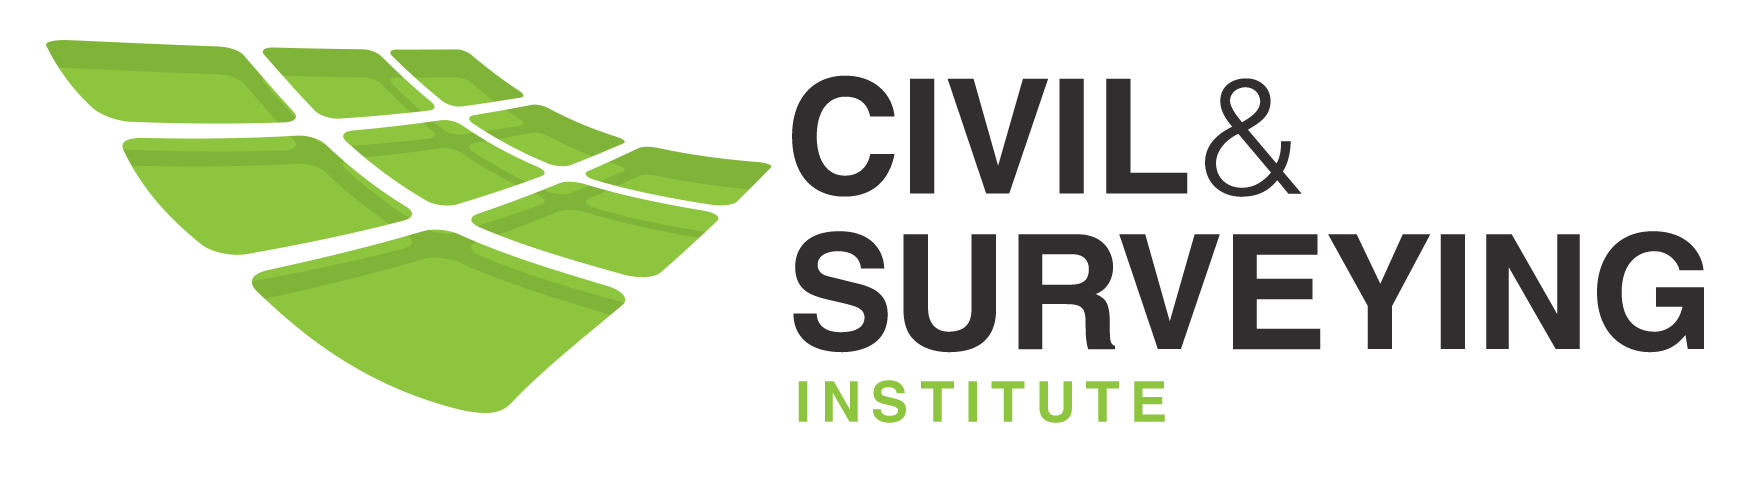 Civil and Surveying Institute